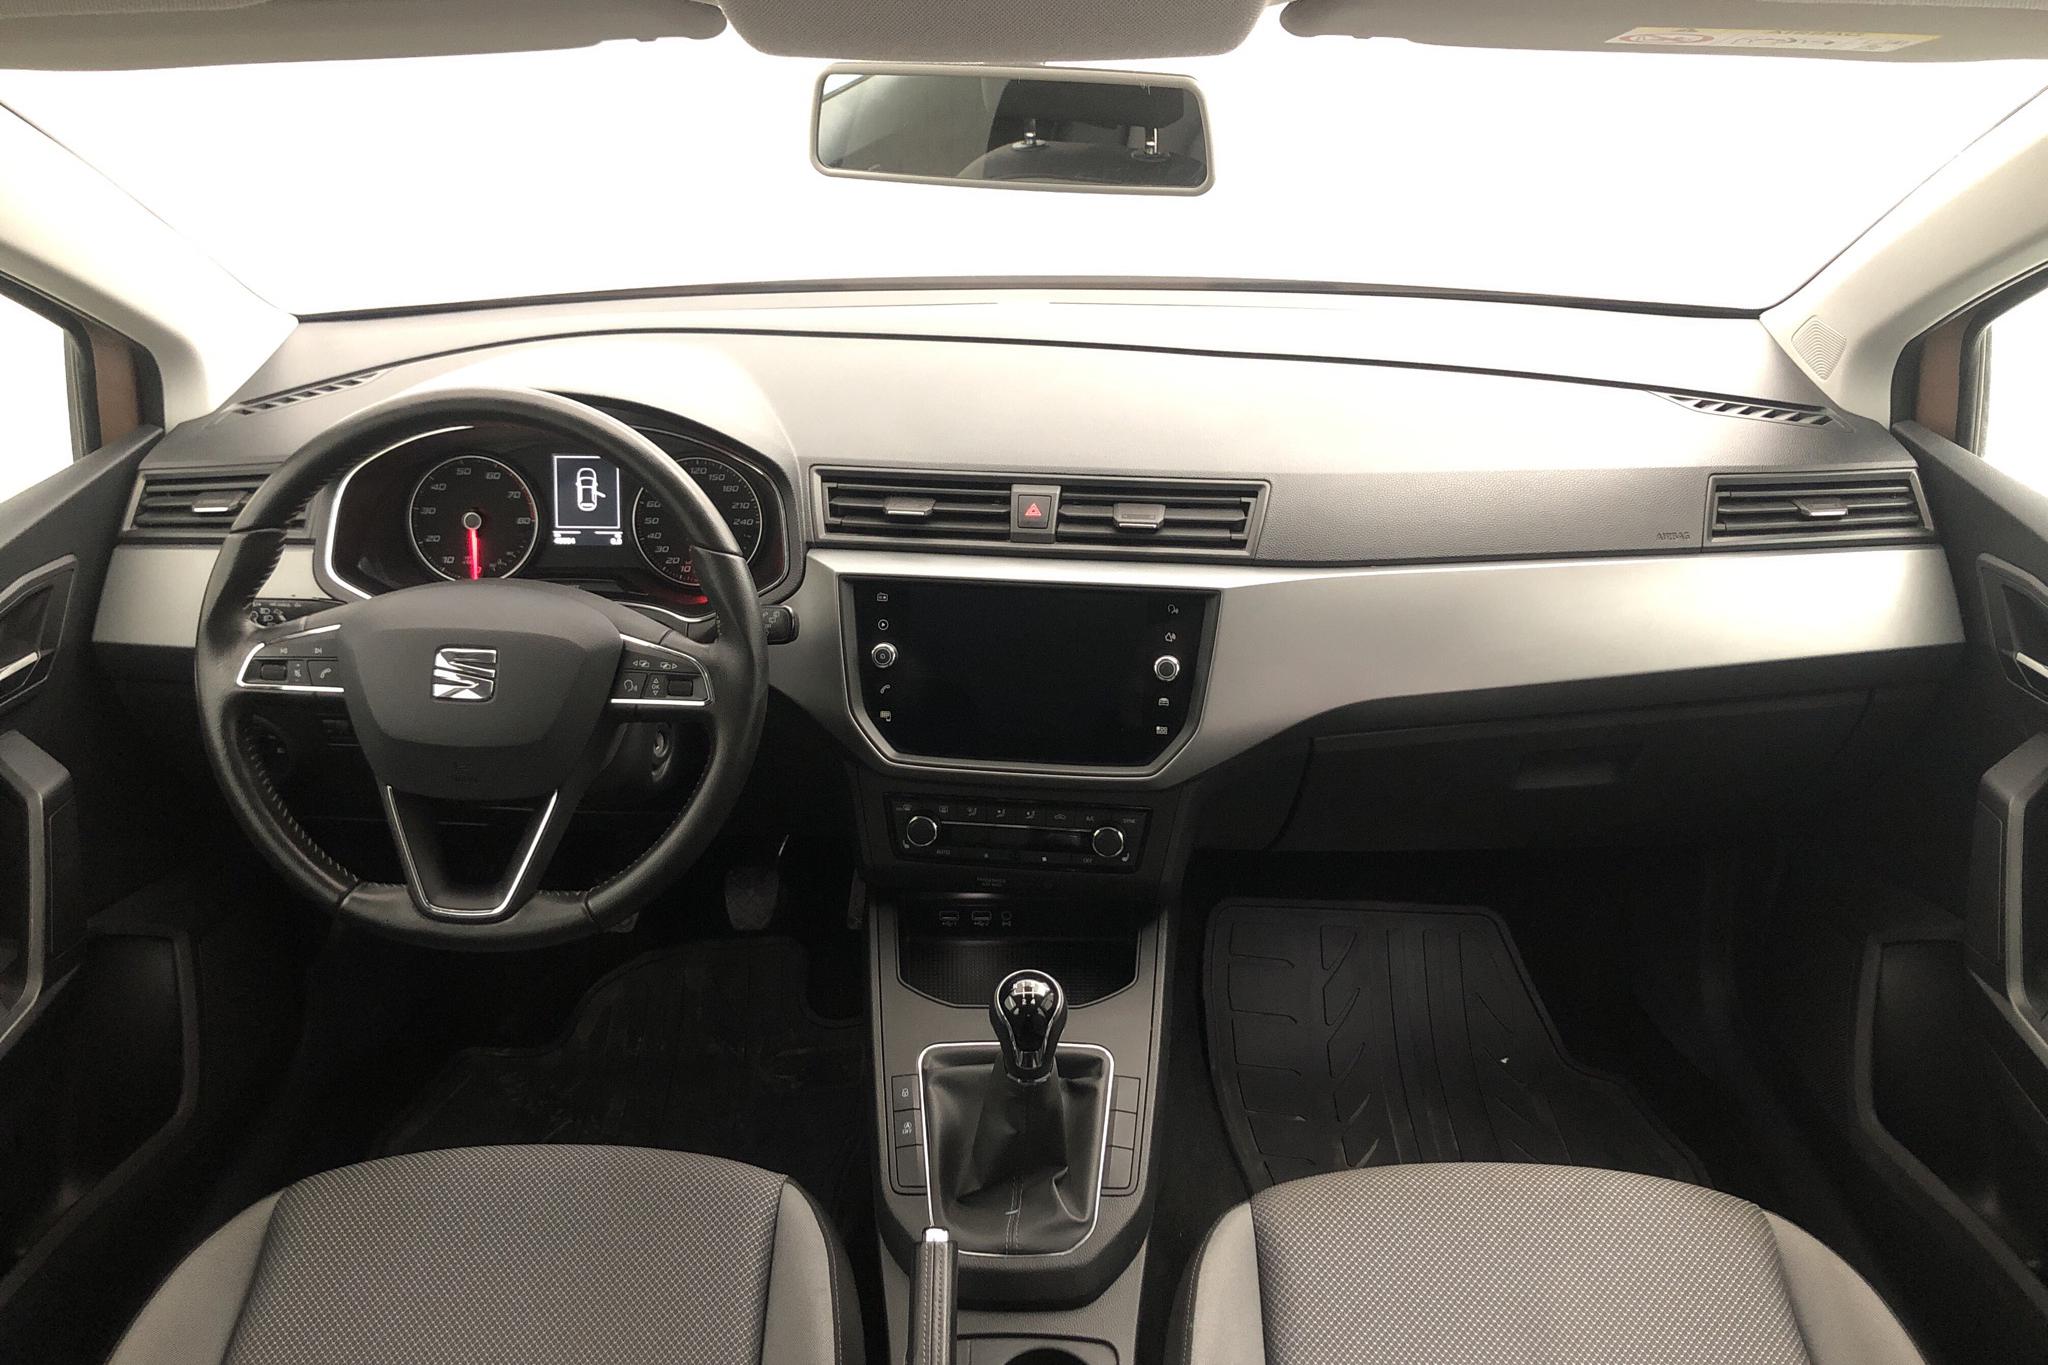 Seat Ibiza 1.0 TSI 5dr (95hk) - 49 060 km - Manual - 2018